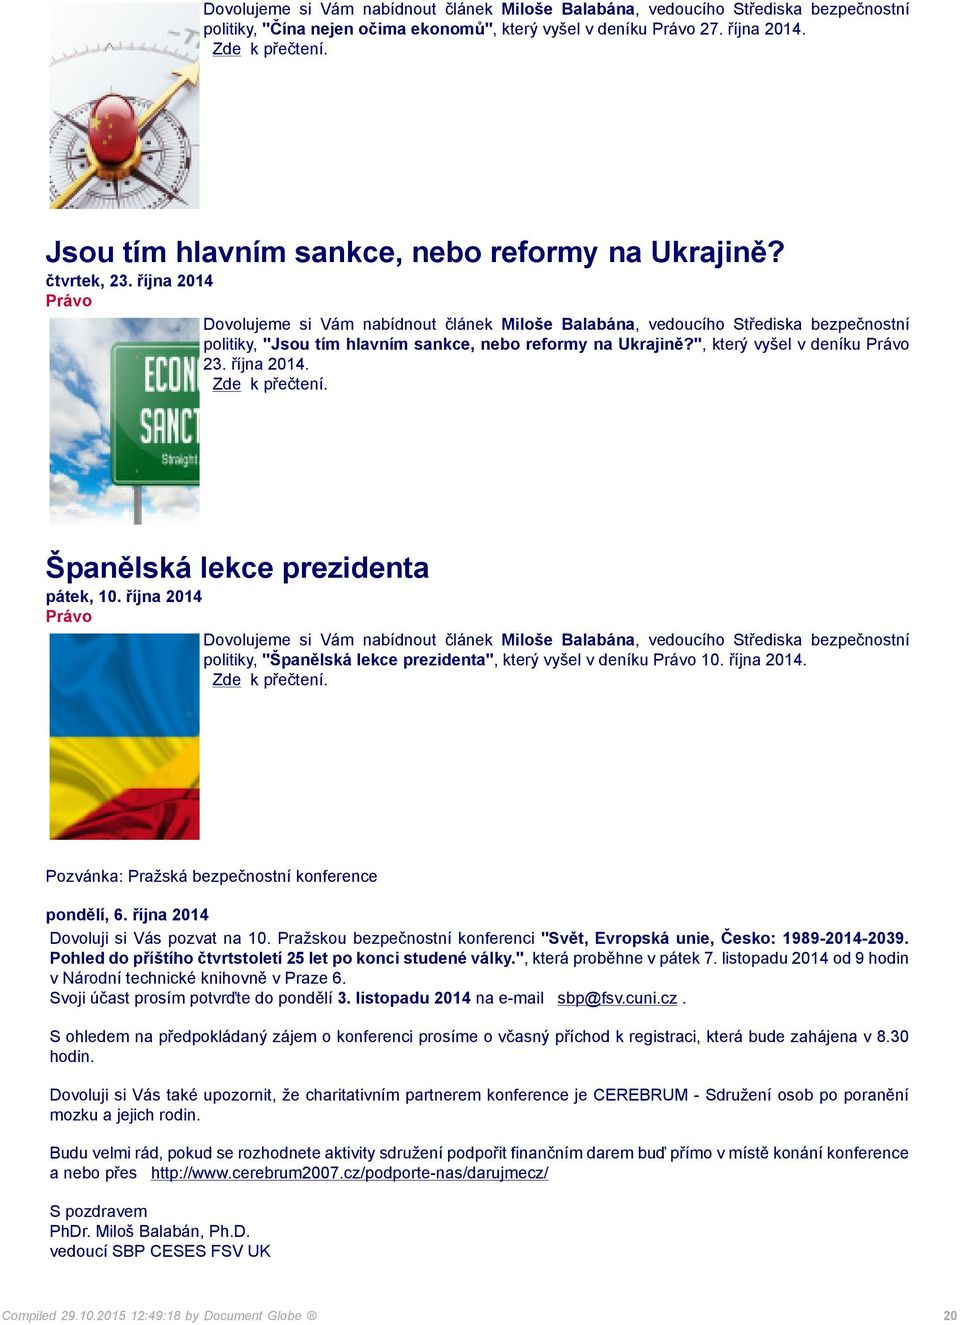 října 2014 politiky, "Španělská lekce prezidenta", který vyšel v deníku 10. října 2014. Pozvánka: Pražská bezpečnostní konference pondělí, 6. října 2014 Dovoluji si Vás pozvat na 10.